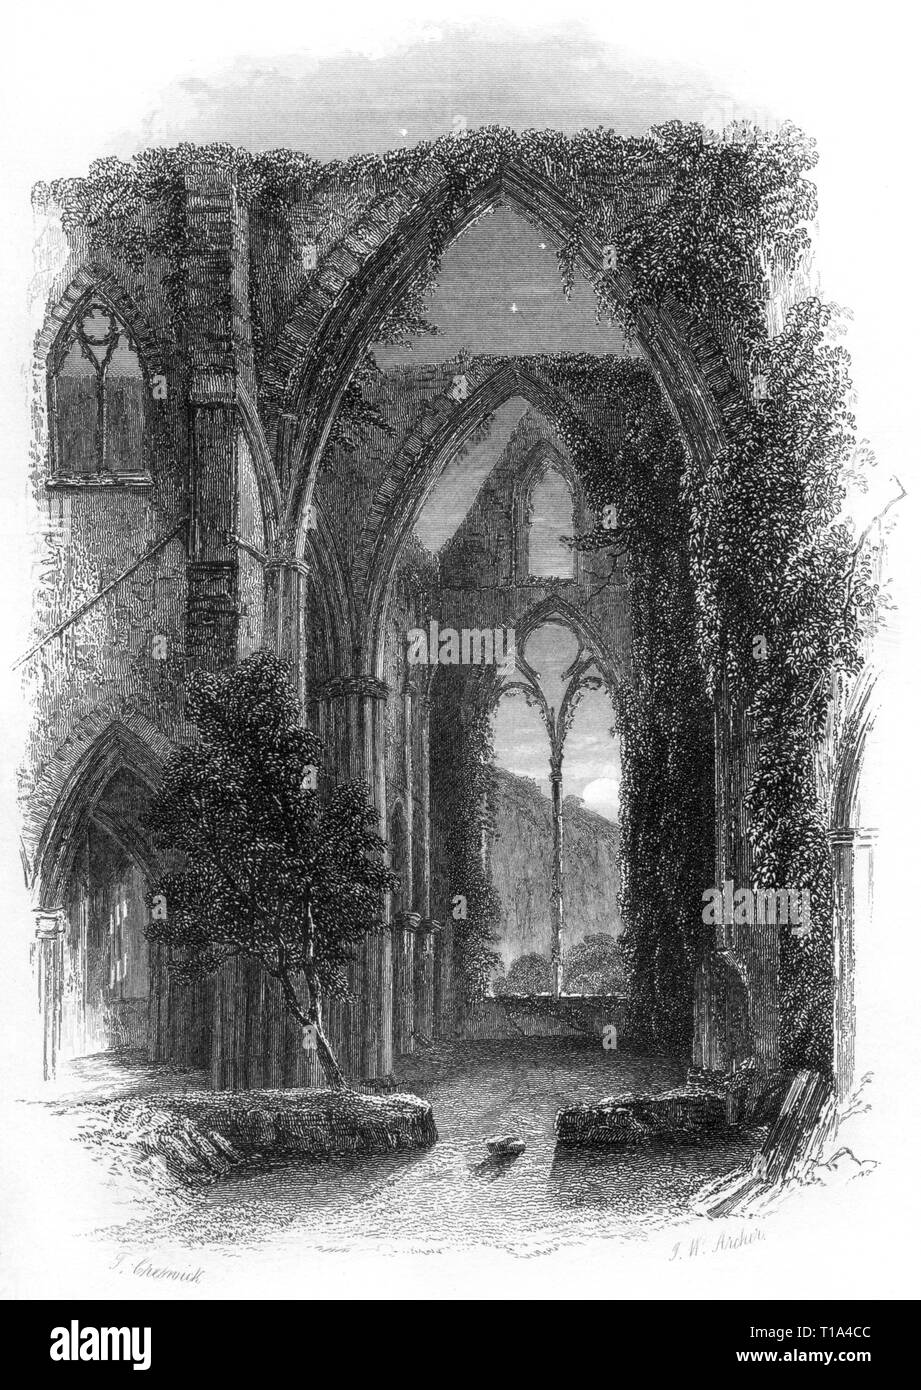 Eine Gravur von Tintern Abbey, Monmouthshire, Wales UK, gescannt in hoher Auflösung aus einem 1841 veröffentlichten Buch. Glaubte, dass es keine Urheberrechte gibt Stockfoto